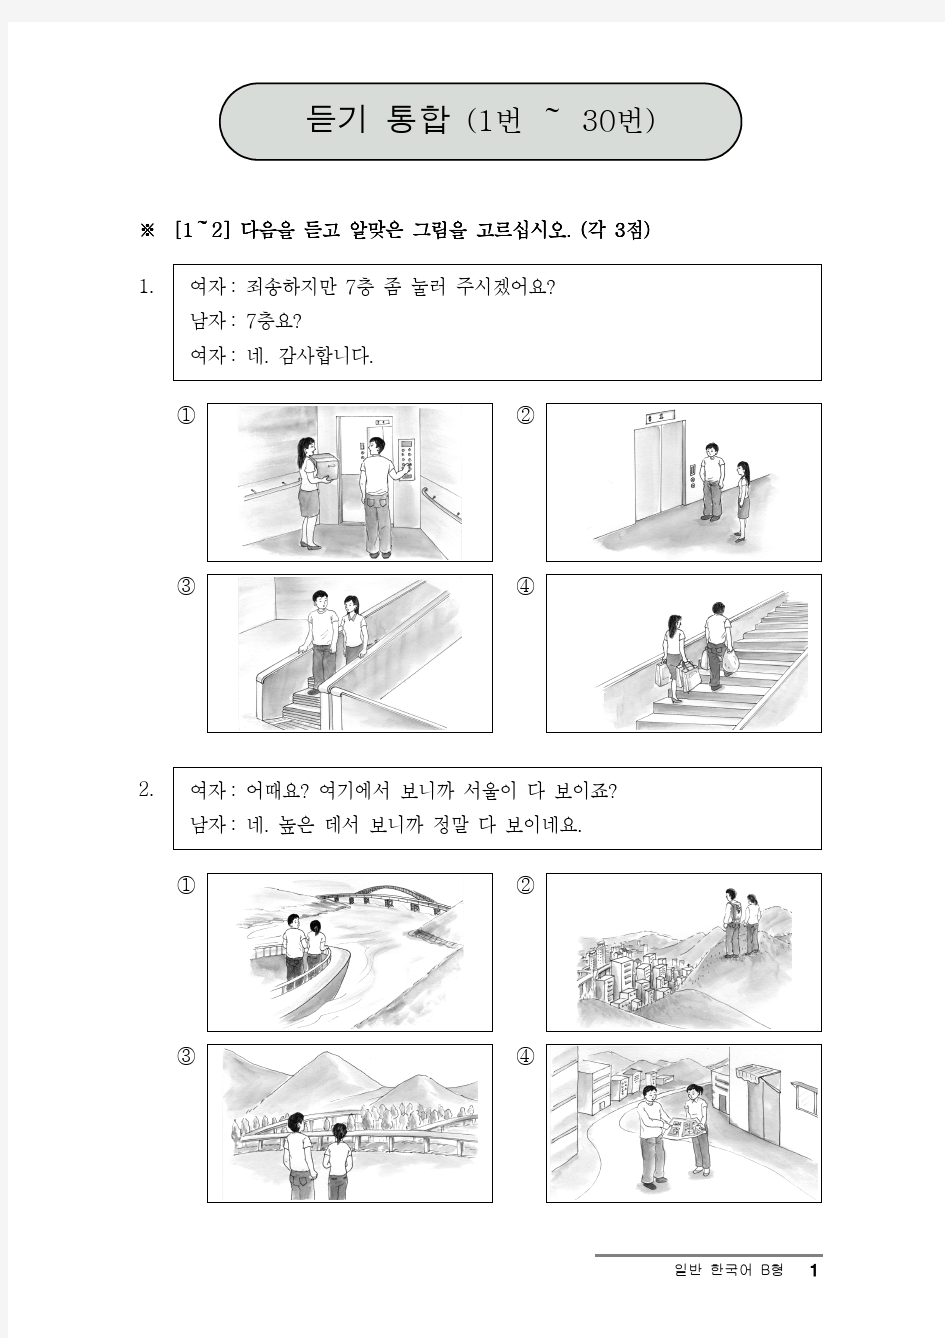 第14届韩国语等级考试真题-中级 听力原文